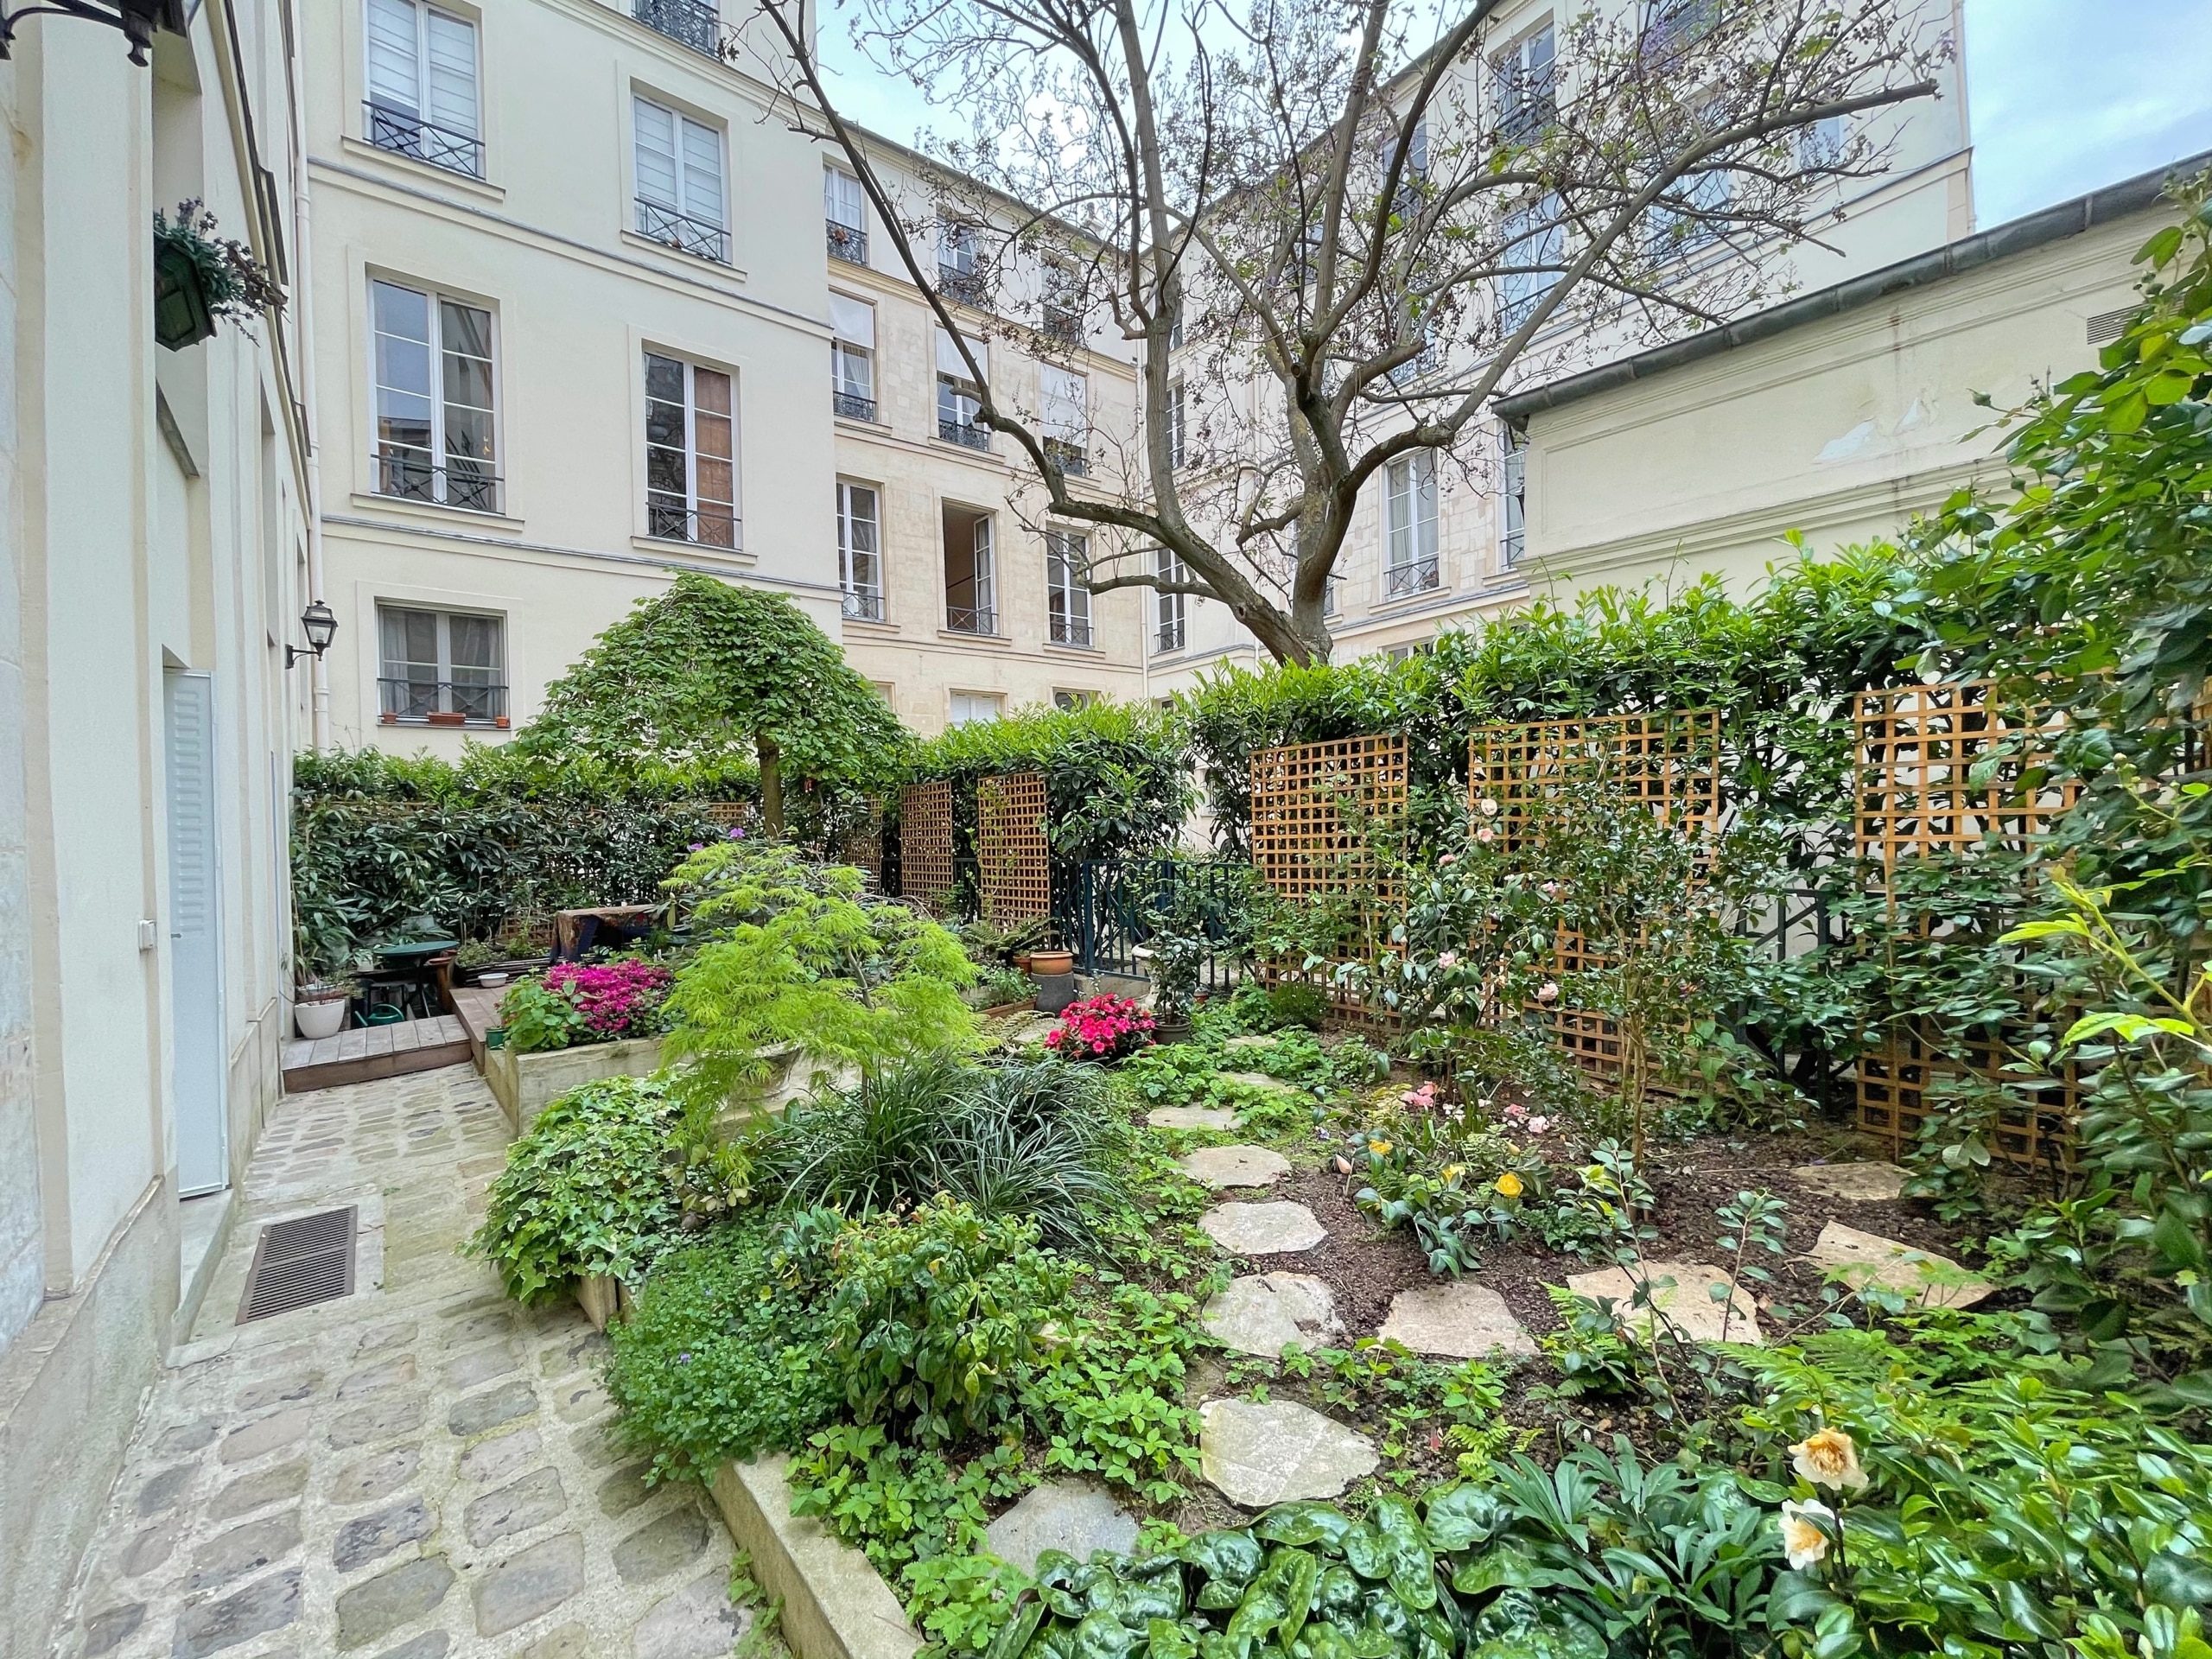 Appartement 80m² avec jardin – Viager Occupé Paris 4ème